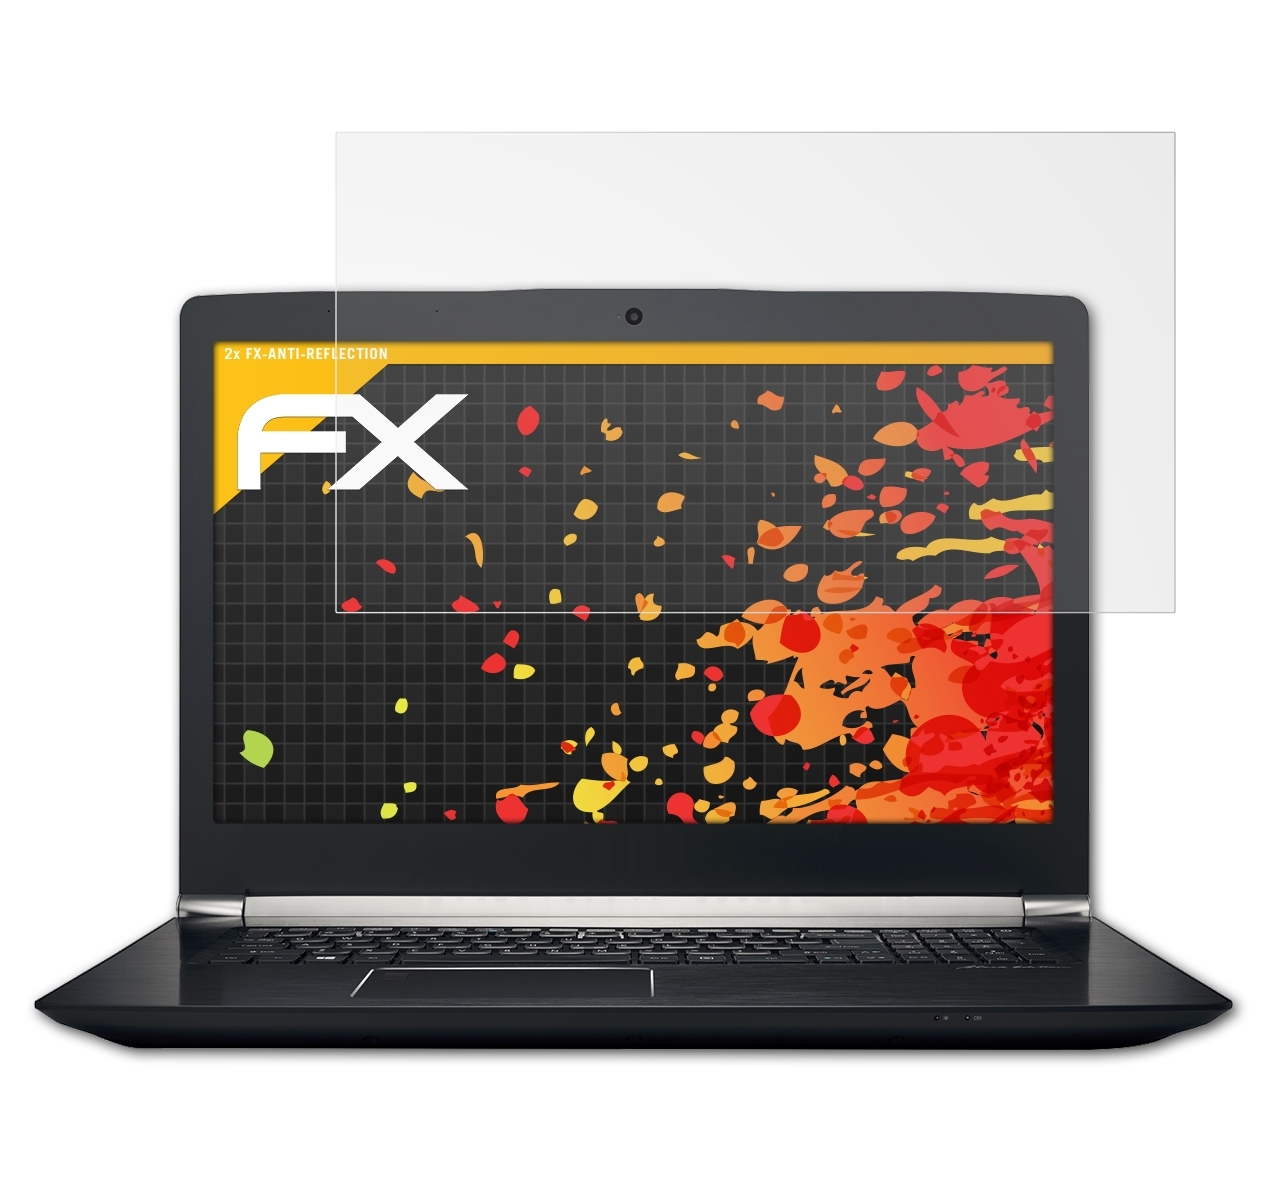 ATFOLIX 2x FX-Antireflex Displayschutz(für Aspire (17,3 Nitro 7-793G V Acer inch))